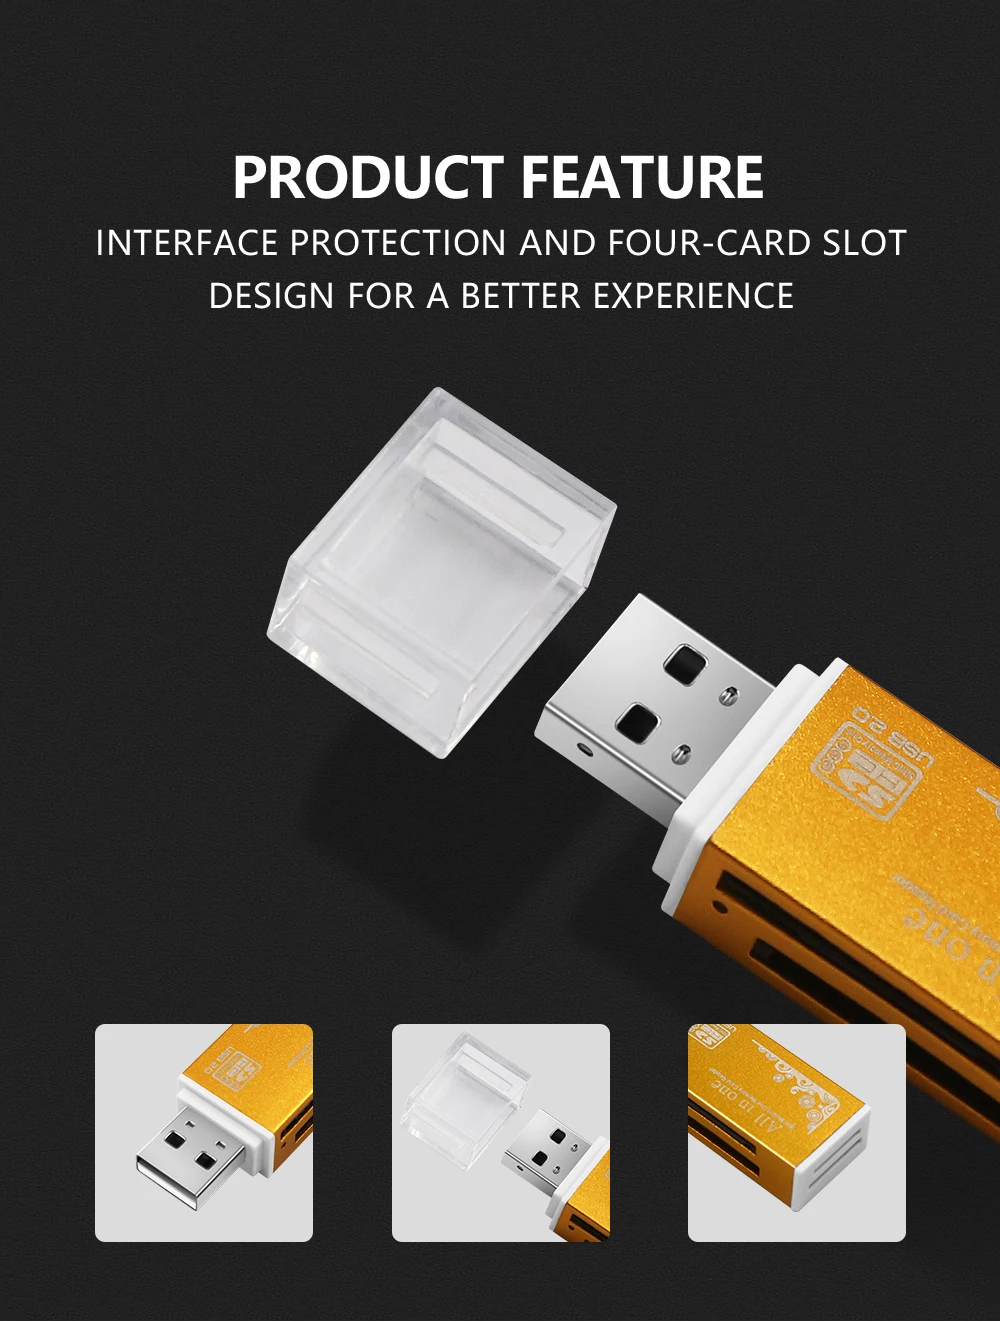 Универсальный Micro USB и USB 3 в 1 OTG кард-ридер высокоскоростной USB2.0 Универсальный OTG TF/SD для Android компьютера удлинители